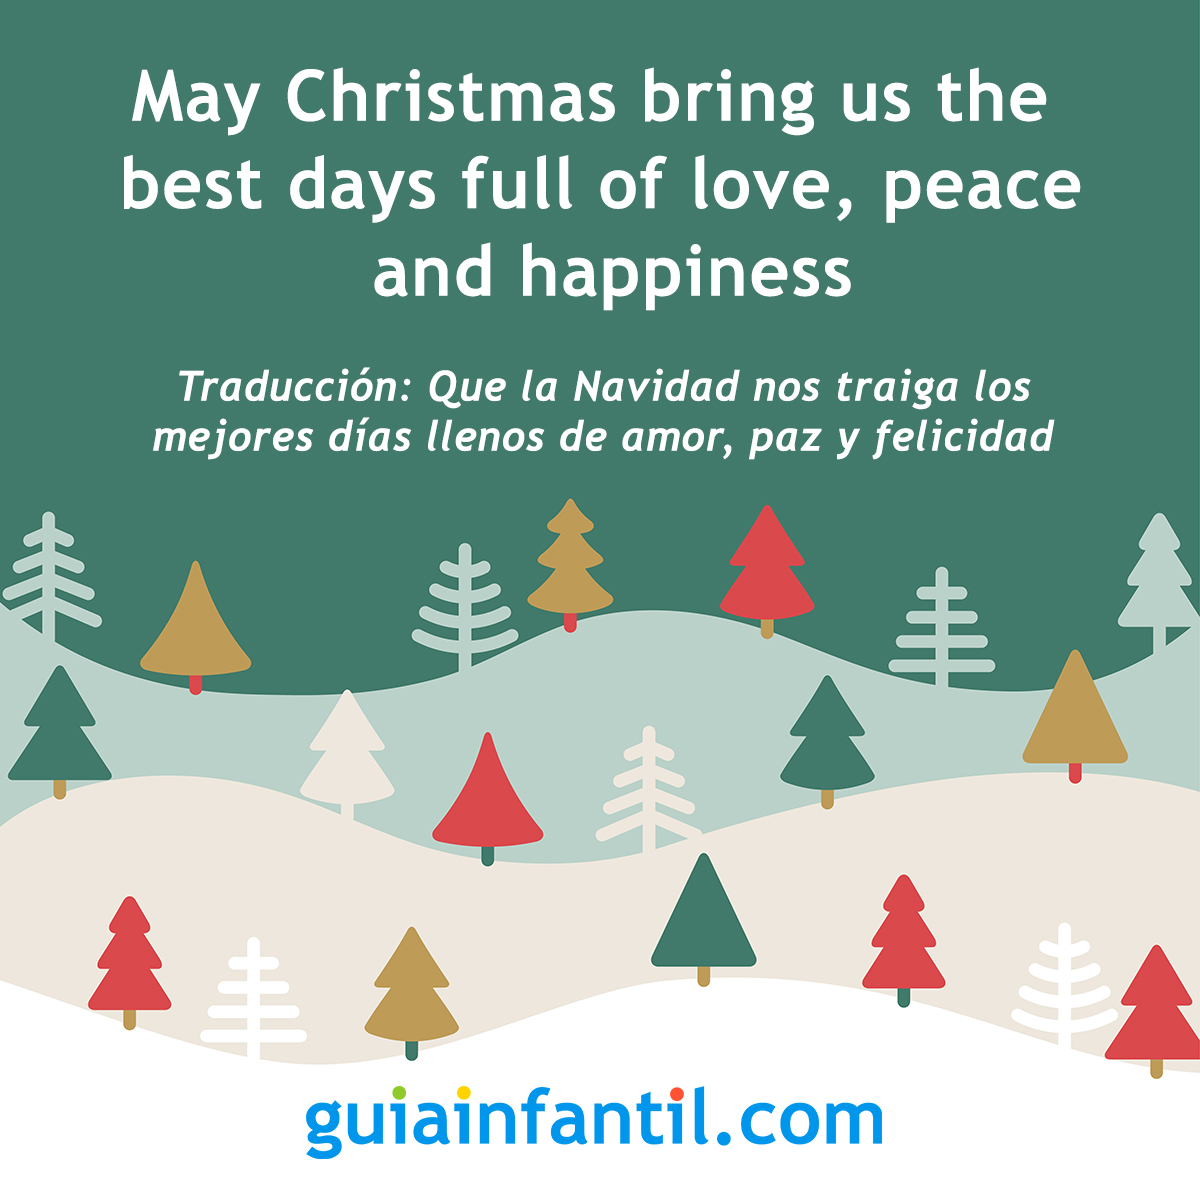 Compartir 30+ imagen frases bonitas para navidad en ingles y español